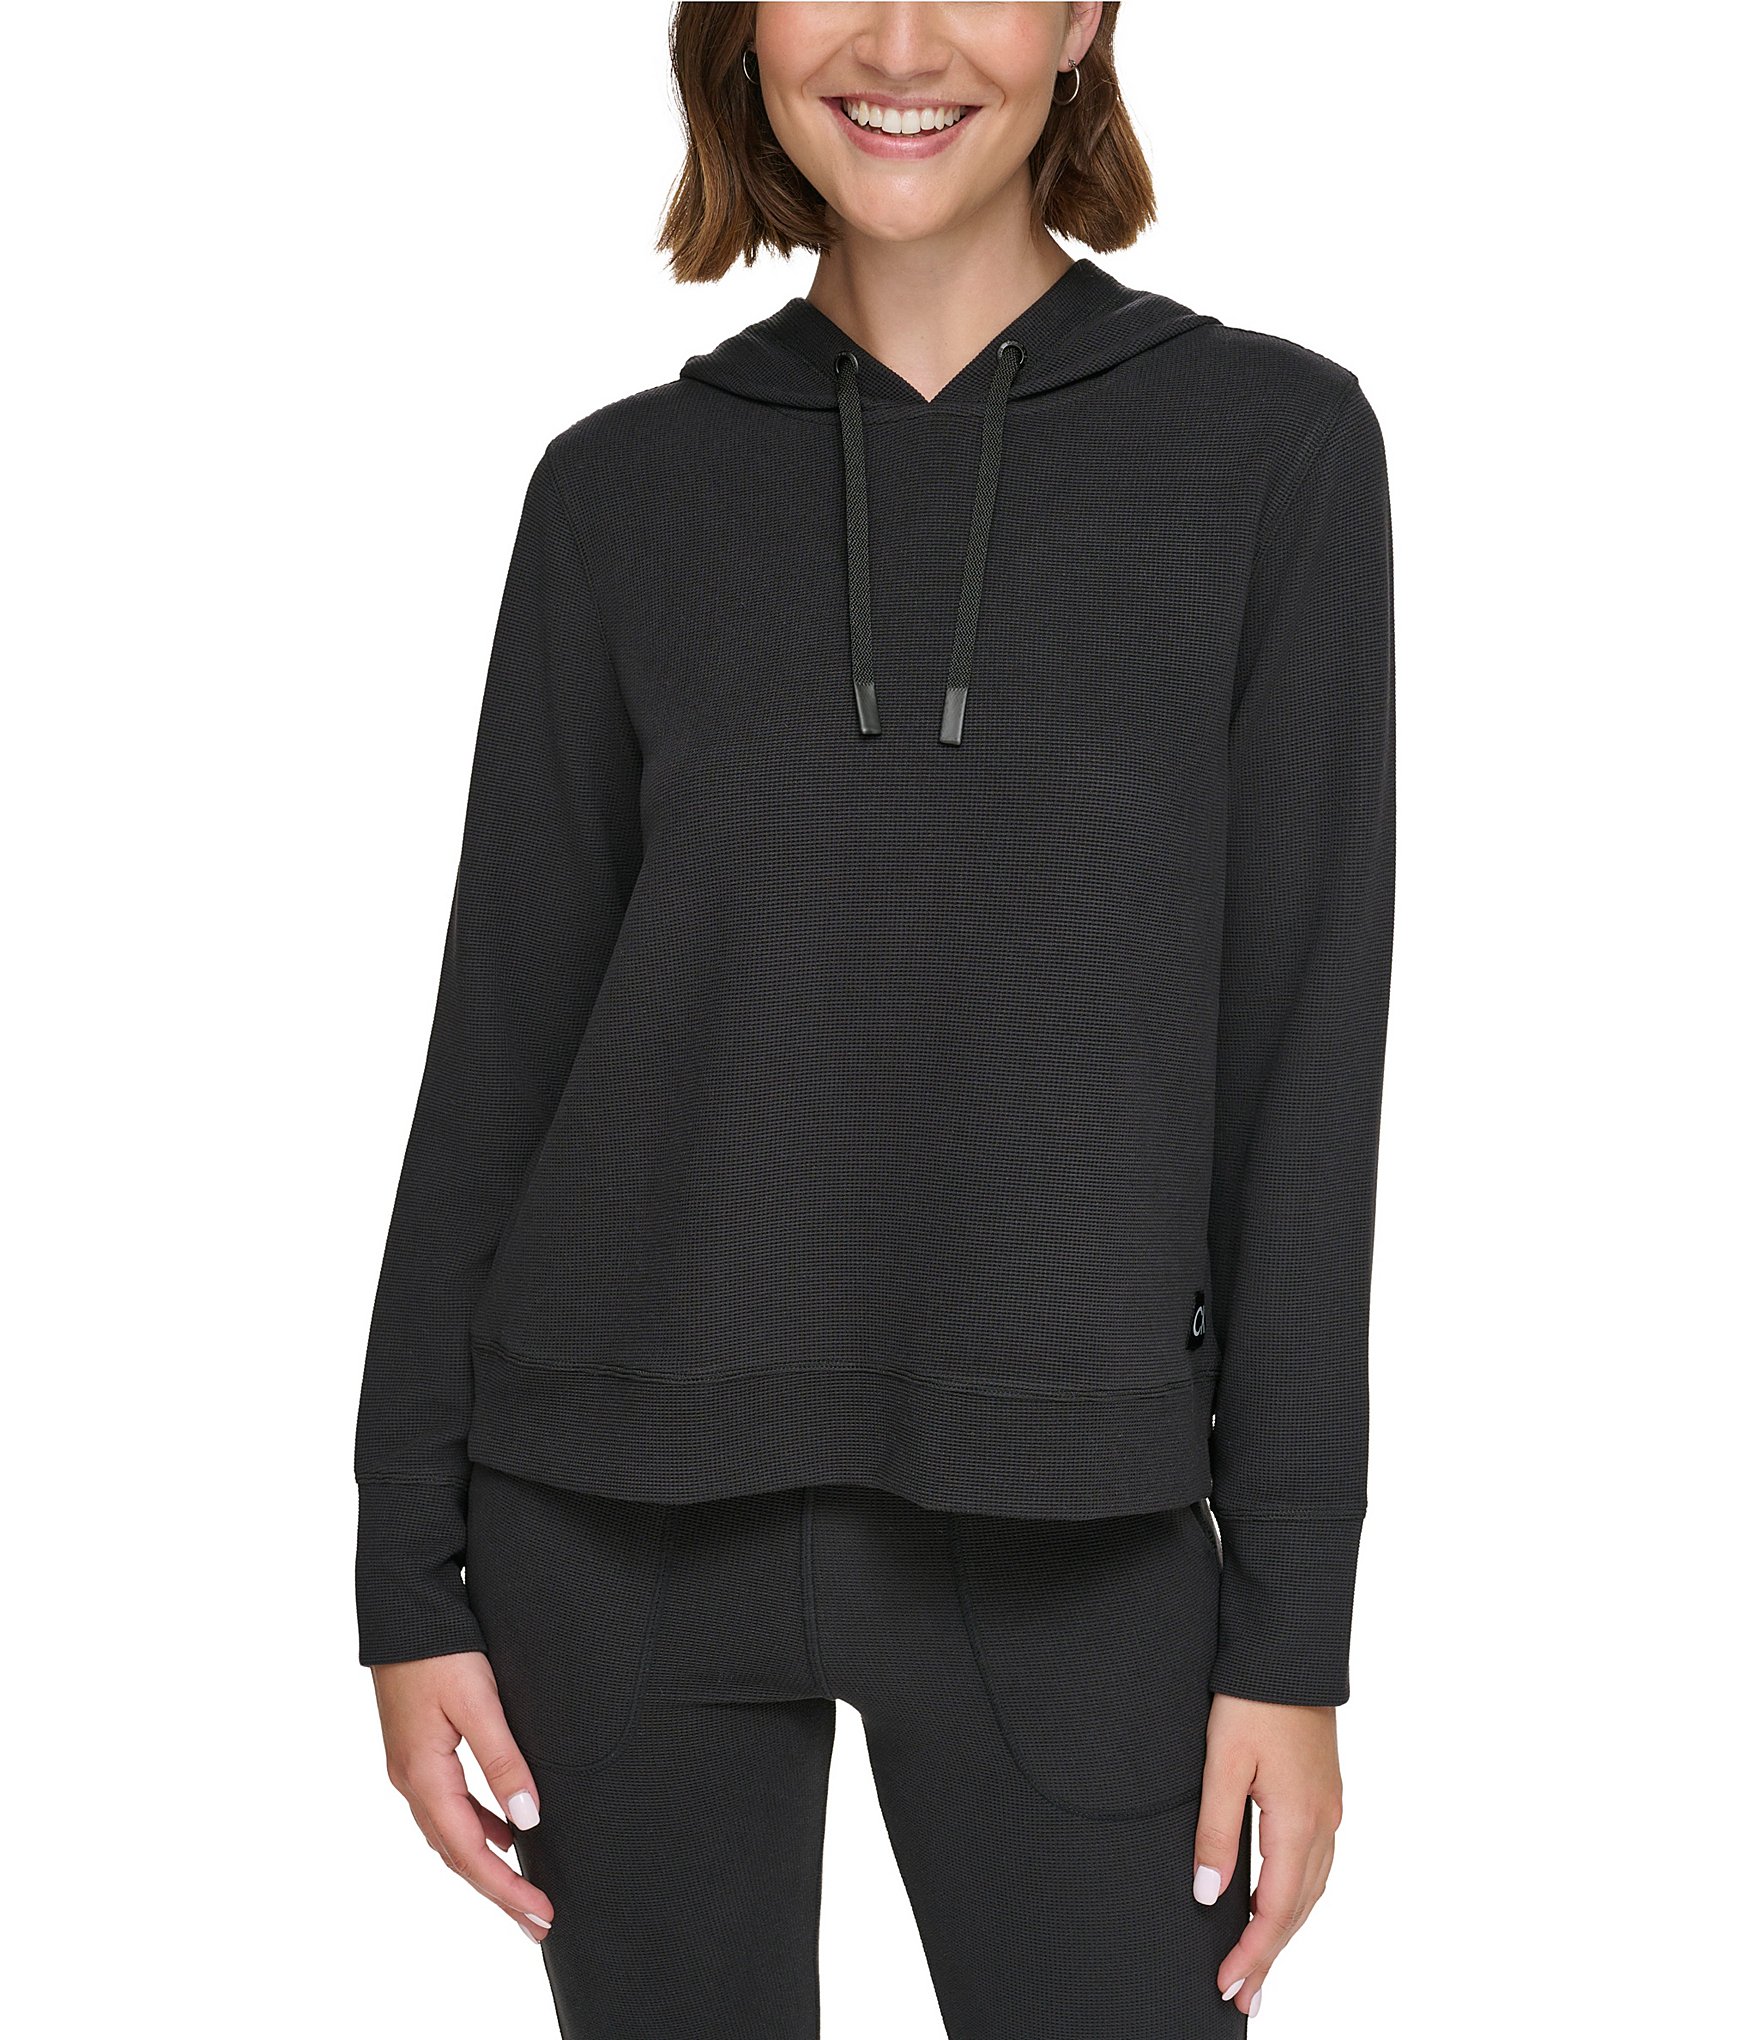 Calvin Klein Performance Gray Fleece Zip Up Jacket Women's Size Medium -  beyond exchange